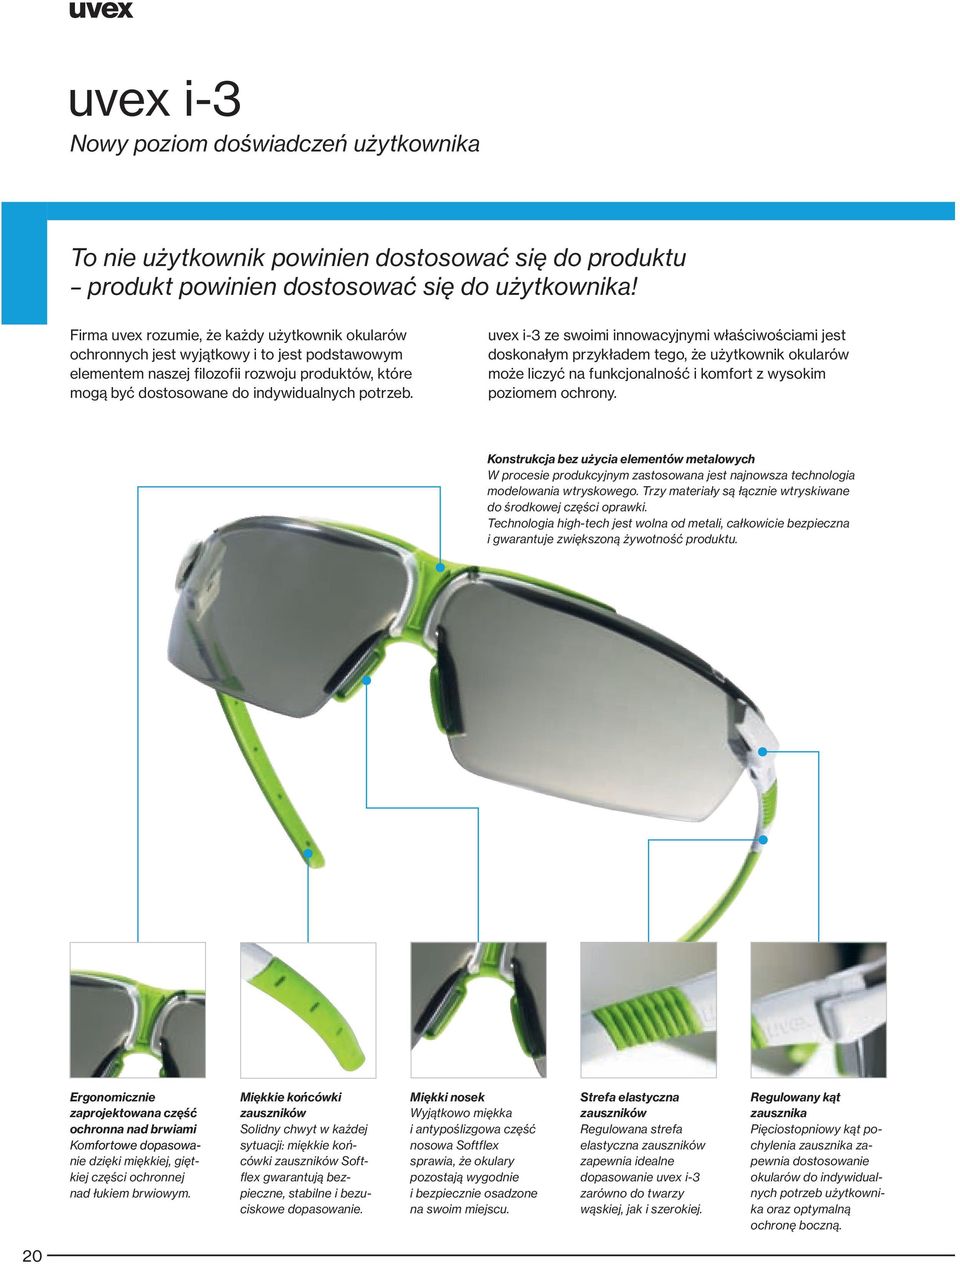 uvex i-3 ze swoimi innowacyjnymi właściwościami jest doskonałym przykładem tego, że użytkownik okularów może liczyć na funkcjonalność i komfort z wysokim poziomem ochrony.